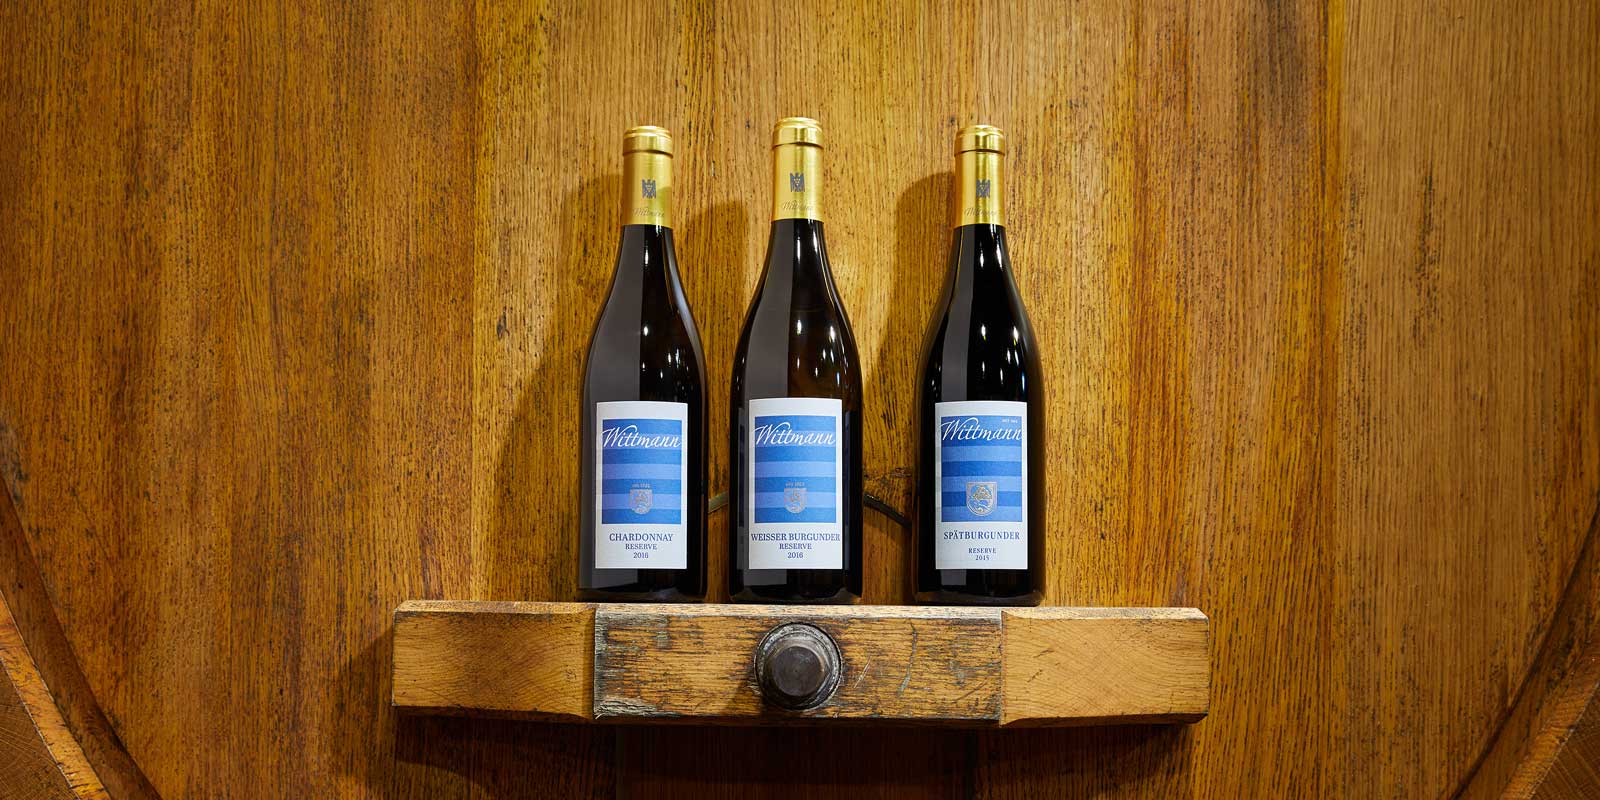 Winiarnia Wittmann Czas i spokoj to skladniki doskonalego wina. Wlasnie to wino znajduje sie w sklepionej piwnicy zbudowanej w 1829 roku. Philipp Wittmann pozwala swoim winom dojrzewac w 80 drewnianych beczkach, w stalej temperaturze i rownej wilgotnosci. Najstarszy pochodzi z 1890 roku i zapewnial juz zakwaterowanie wielu wspanialym pokoleniom. Kazda beczka zawiera zbiory z jednej dzialki winnicy.